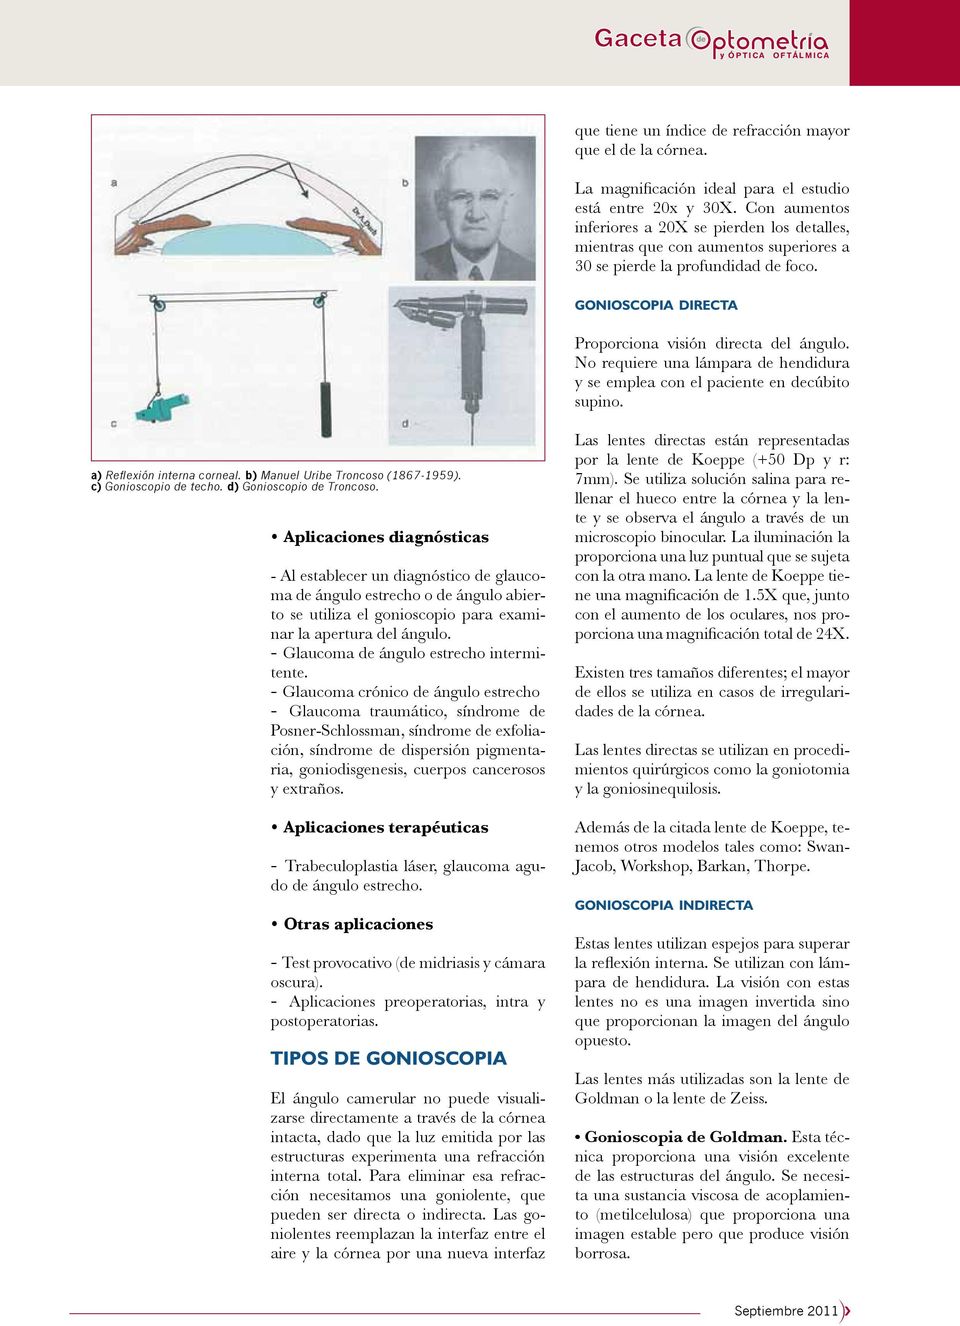 No requiere una lámpara de hendidura y se emplea con el paciente en decúbito supino. a) Reflexión interna corneal. b) Manuel Uribe Troncoso (1867-1959). c) Gonioscopio de techo.